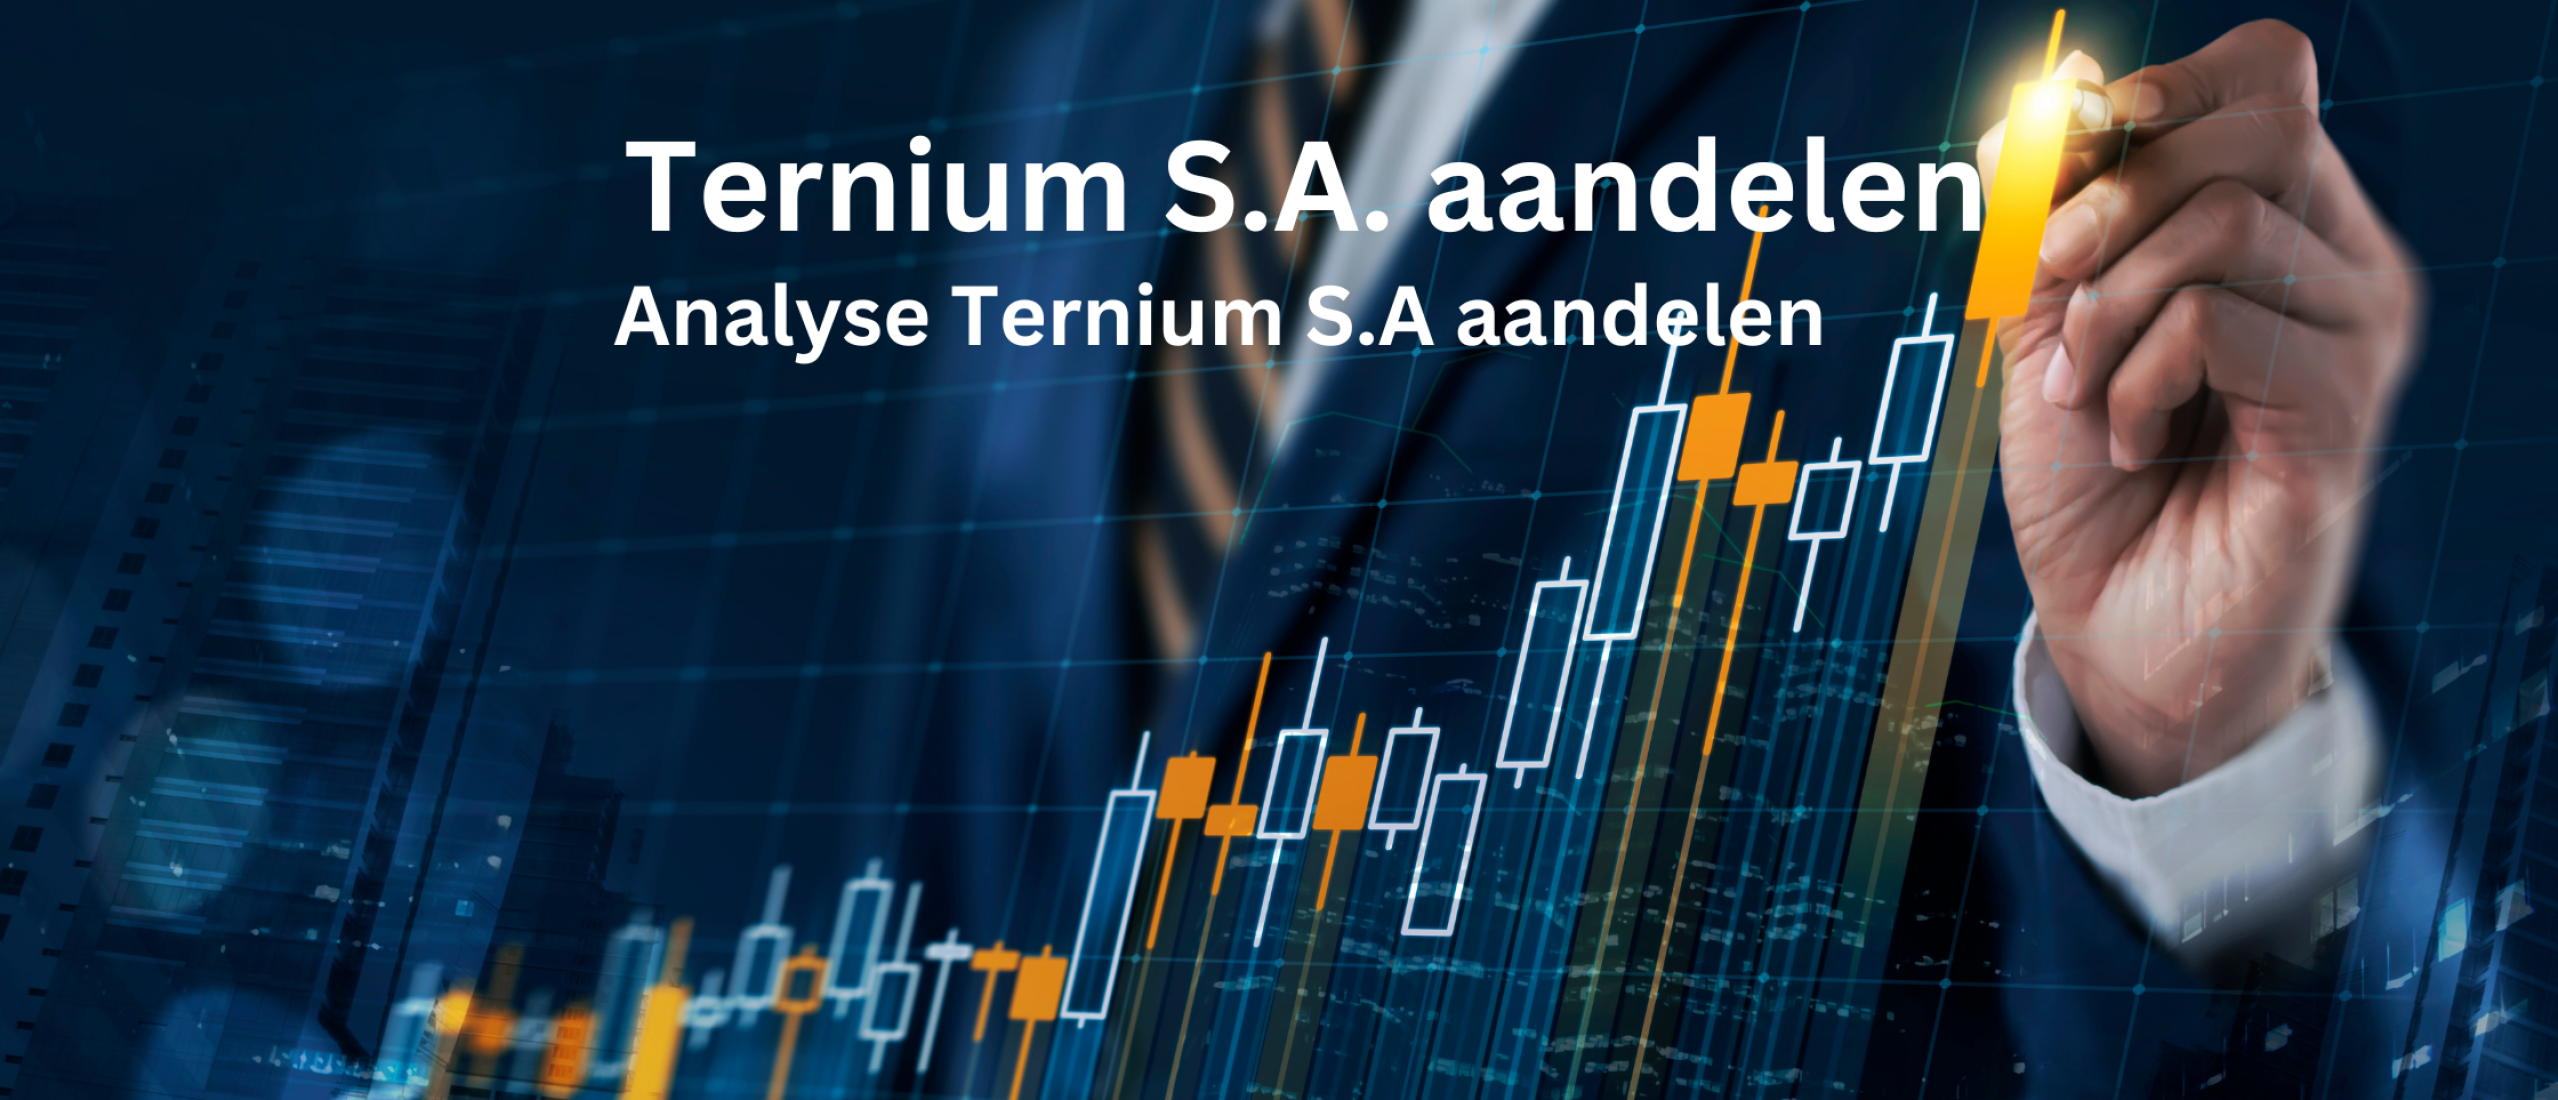 Ternium S.A. aandelen kopen? +49,4% Groei en +4,5% Dividend | Happy Investors